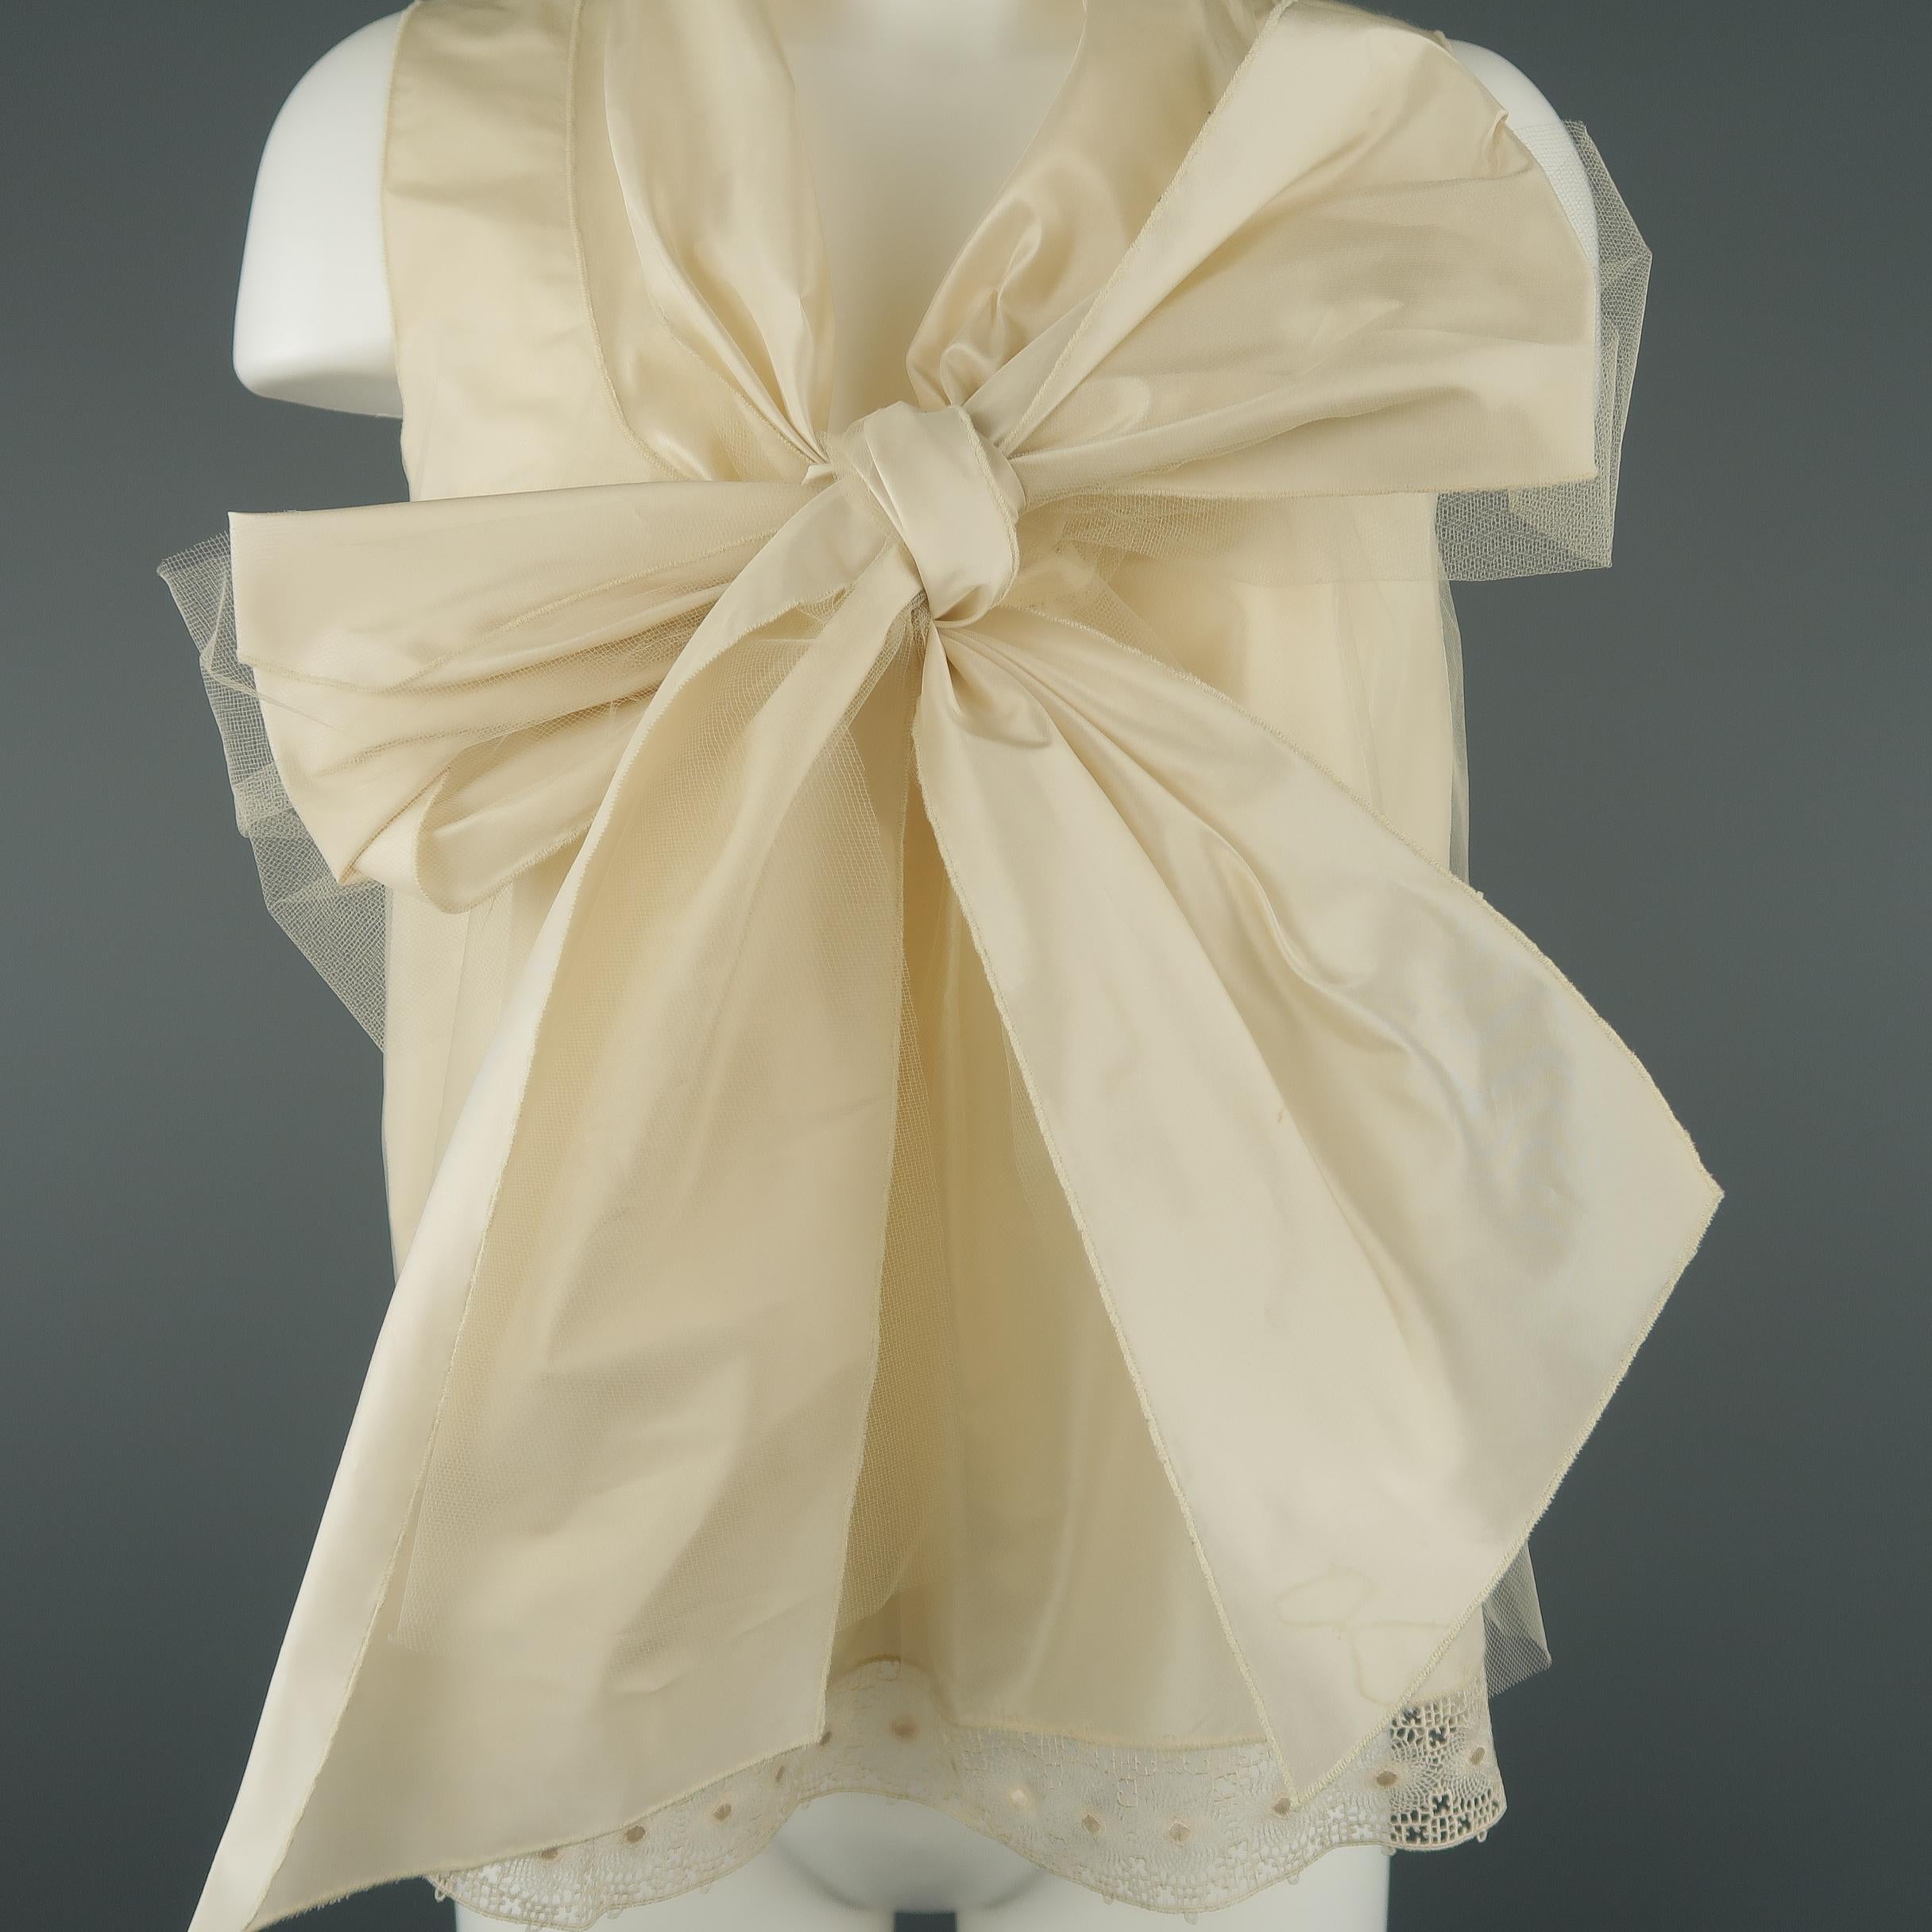 Women's OSCAR DE LA RENTA Size 8 Beige Silk Blend Tulle Overlay Oversized Bow Blouse